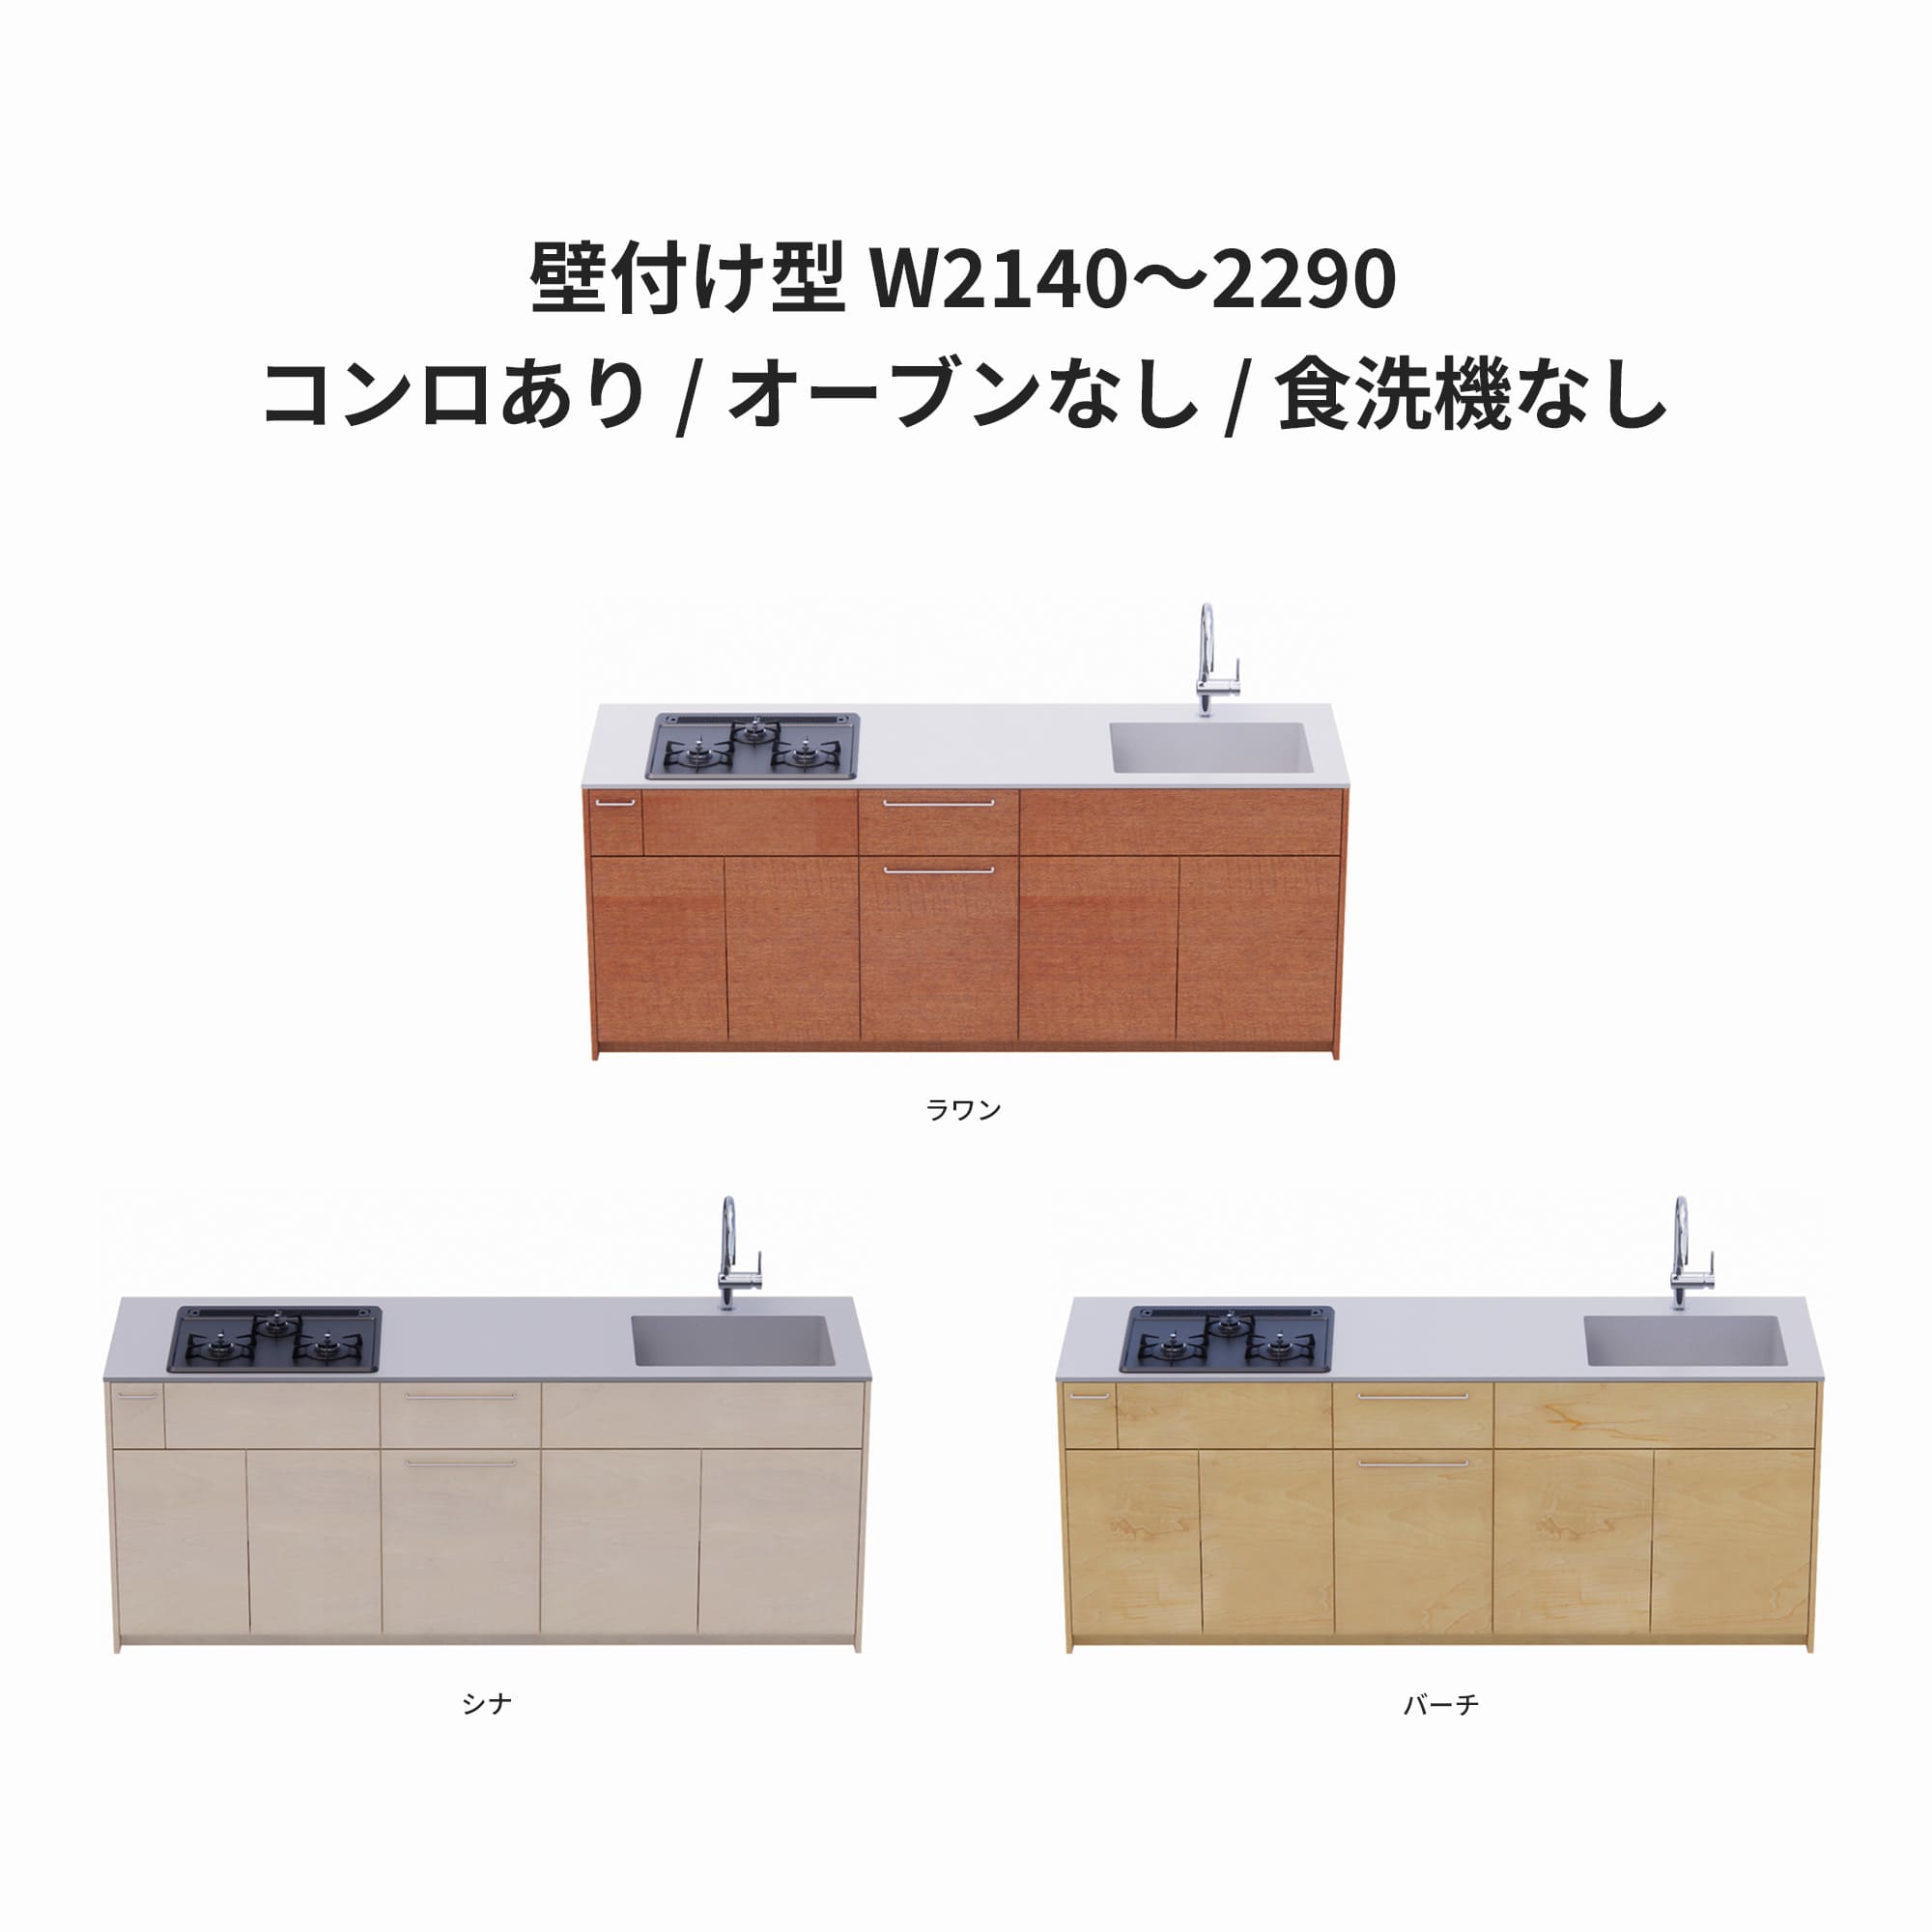 木製システムキッチン 壁付け型 W2140～2290・コンロあり / オーブンなし / 食洗機なし KB-KC022-17-G183 ラワン・シナ・バーチが選択できます